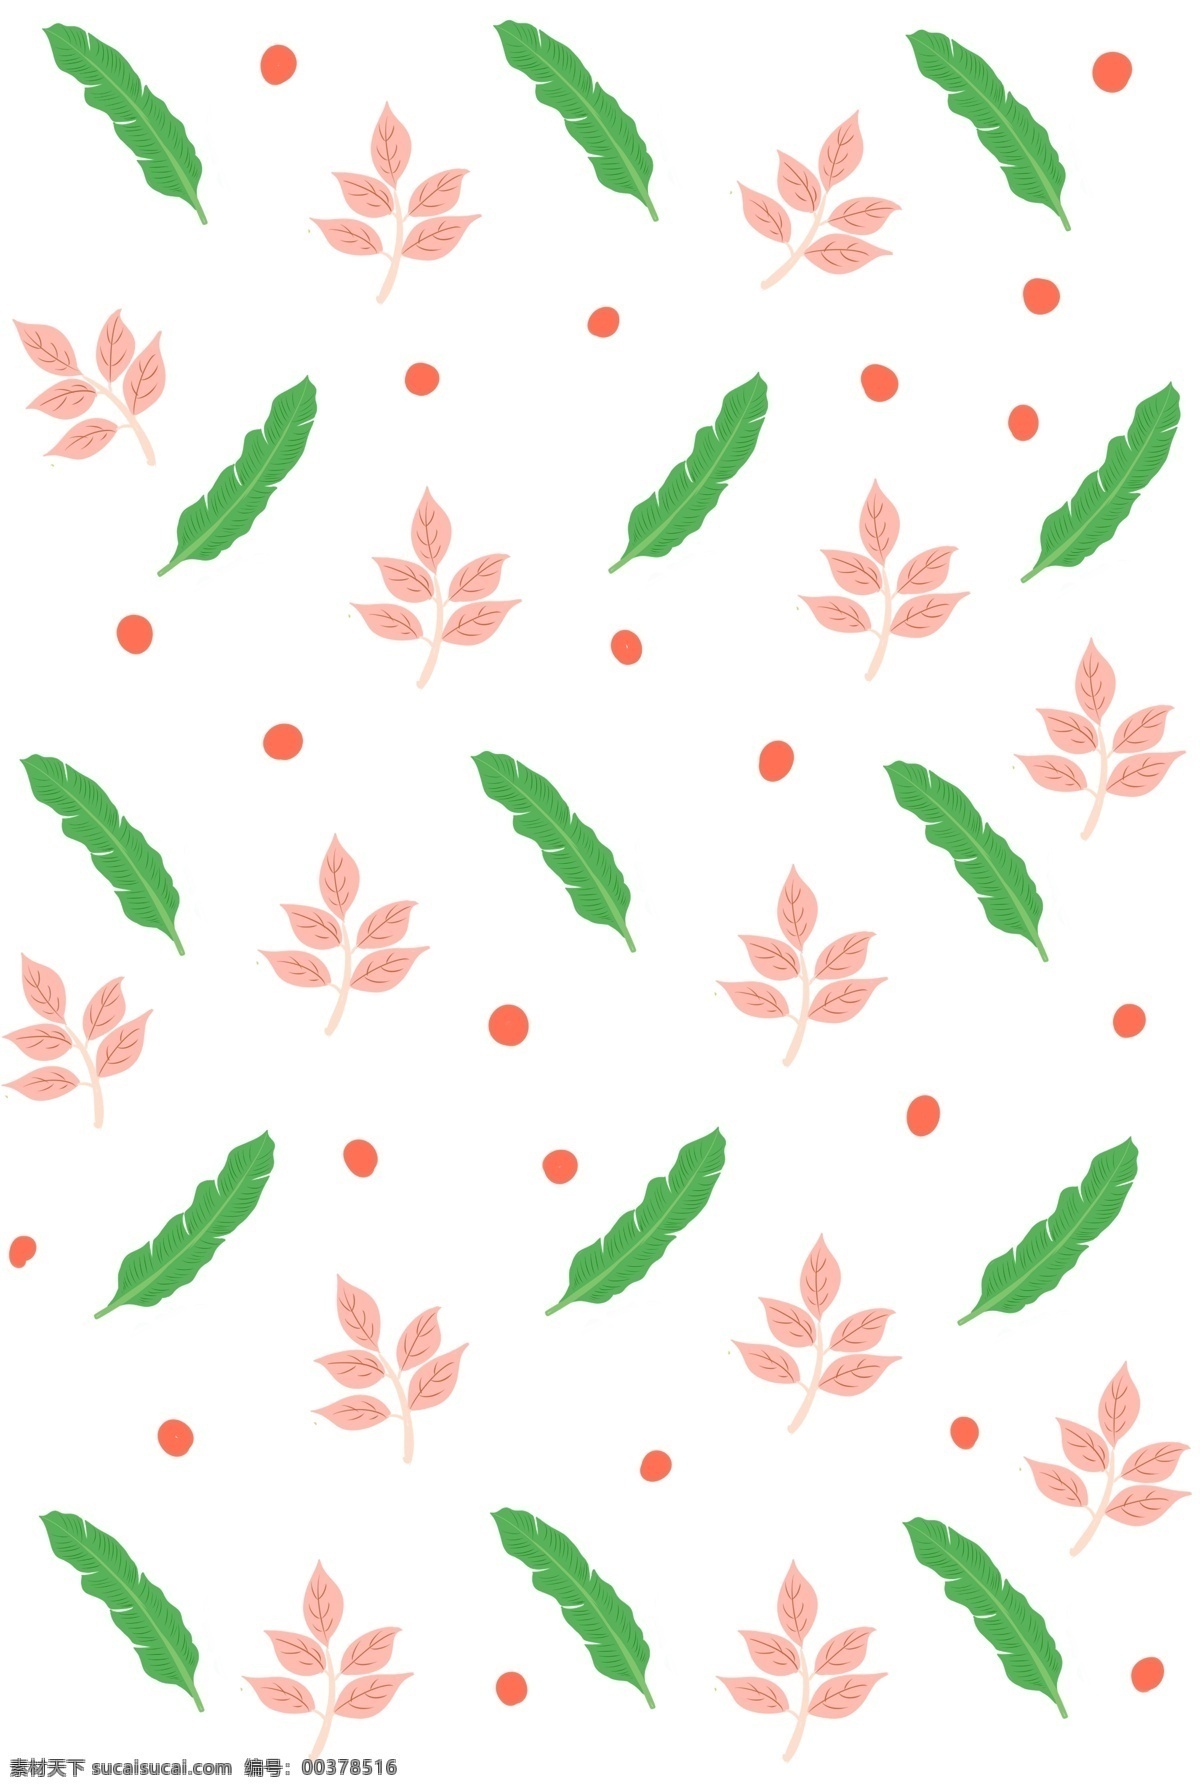 手绘 枫叶 植物 底纹 红色的枫叶 卡通插画 手绘植物插画 创意的底纹 漂亮的底纹 绿色的树叶